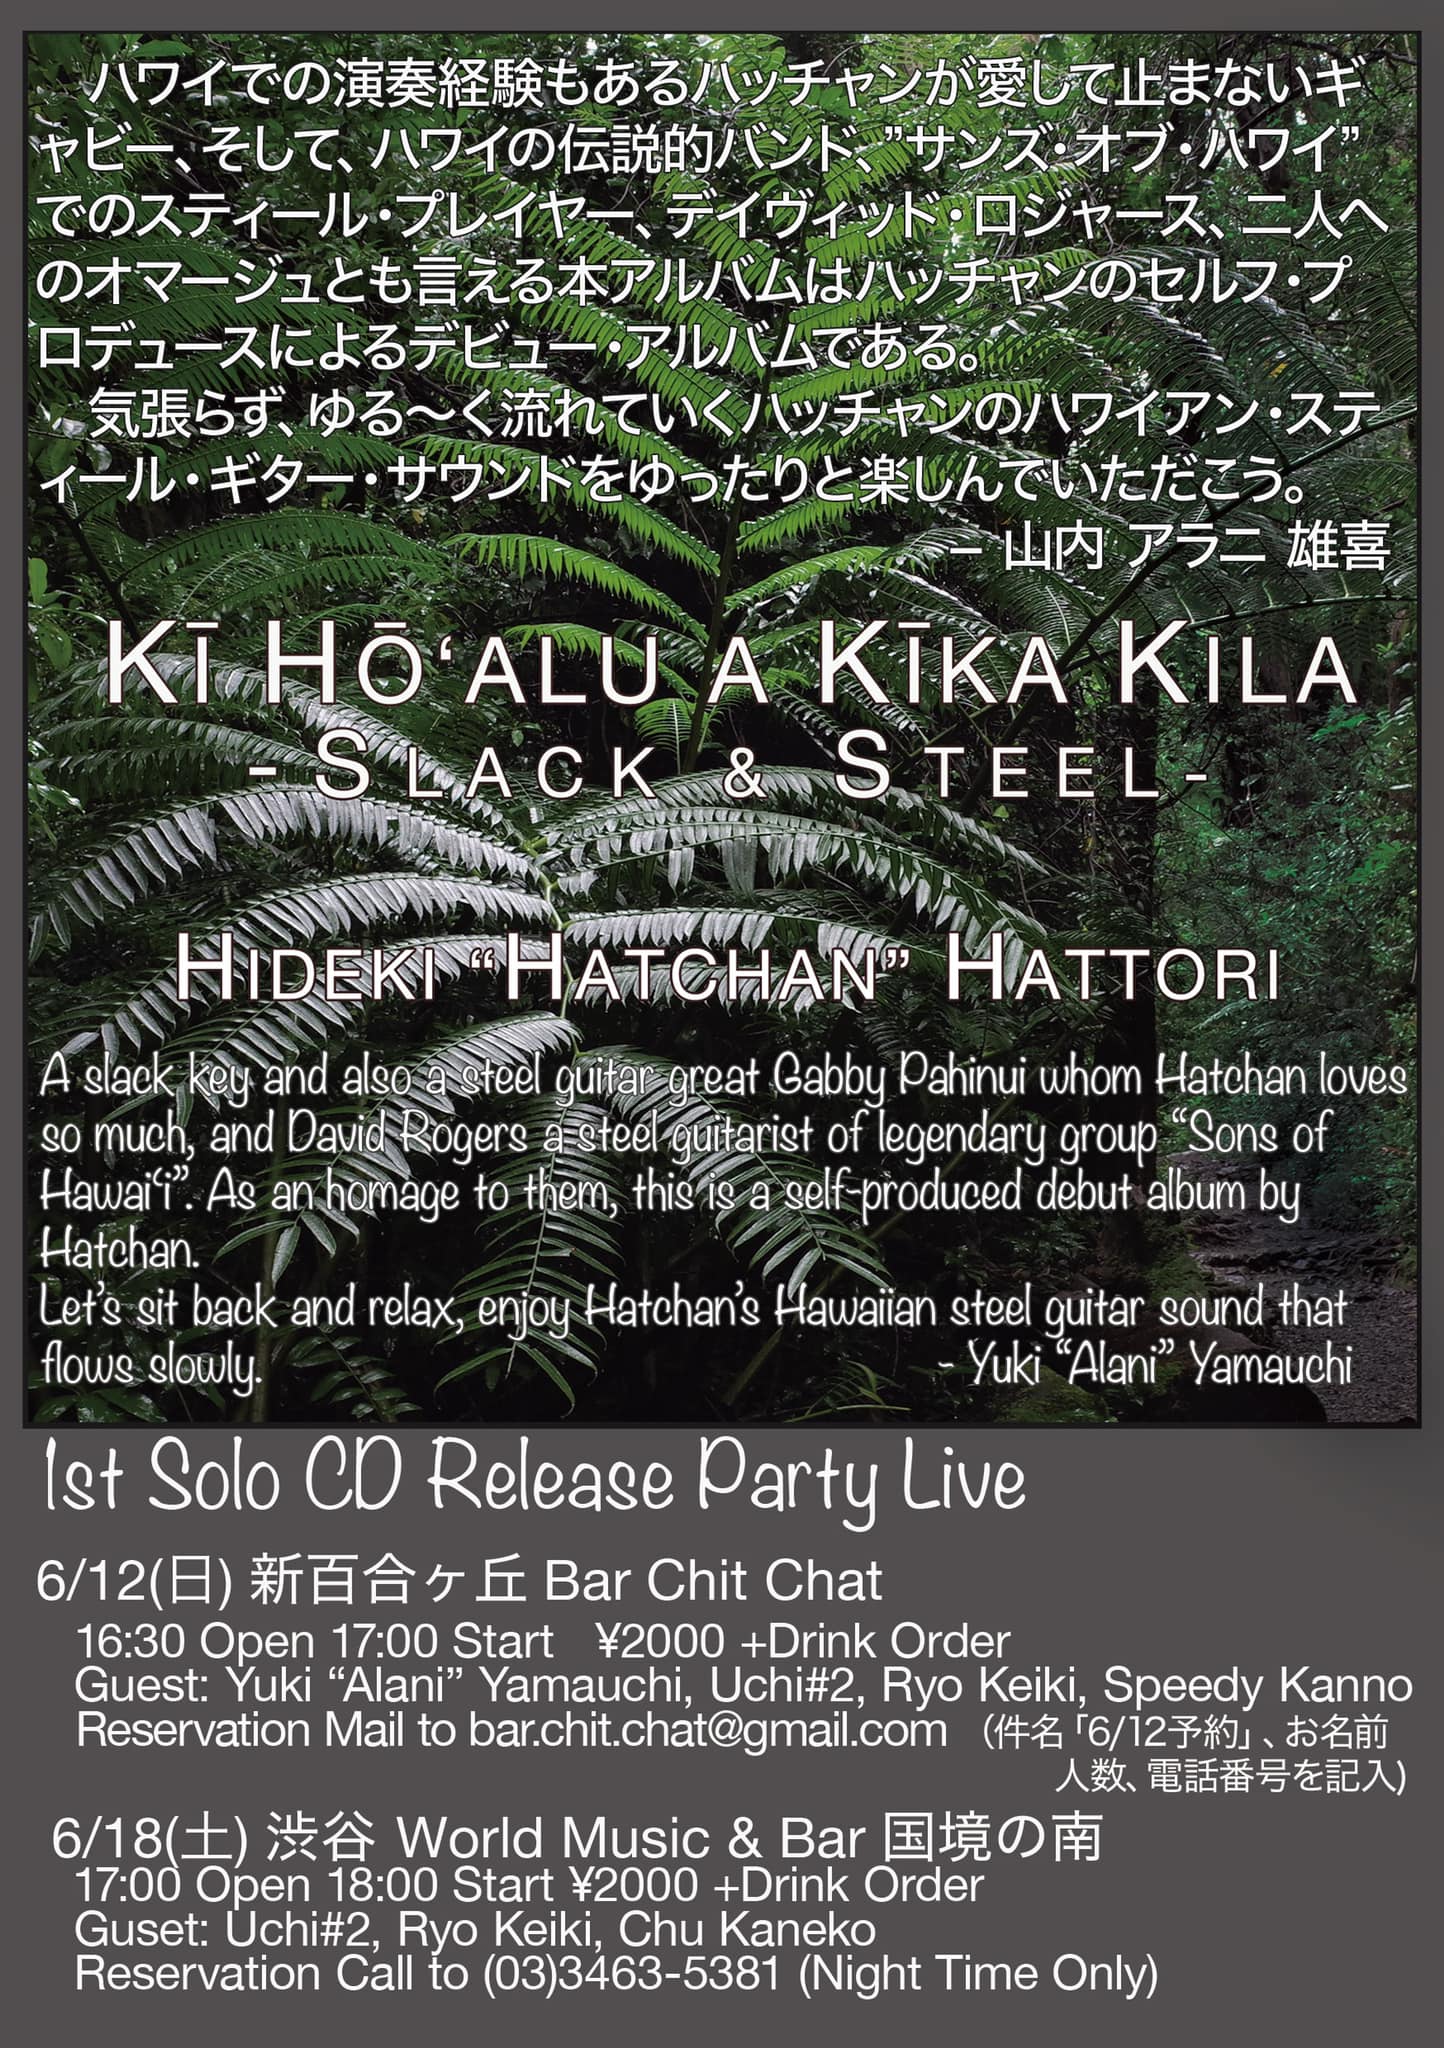 神奈川 HIDEKI "HATCHAN" HATTORI 1st Solo CD Release Party Live @ Bar Chit Chat | 名古屋市 | 愛知県 | 日本